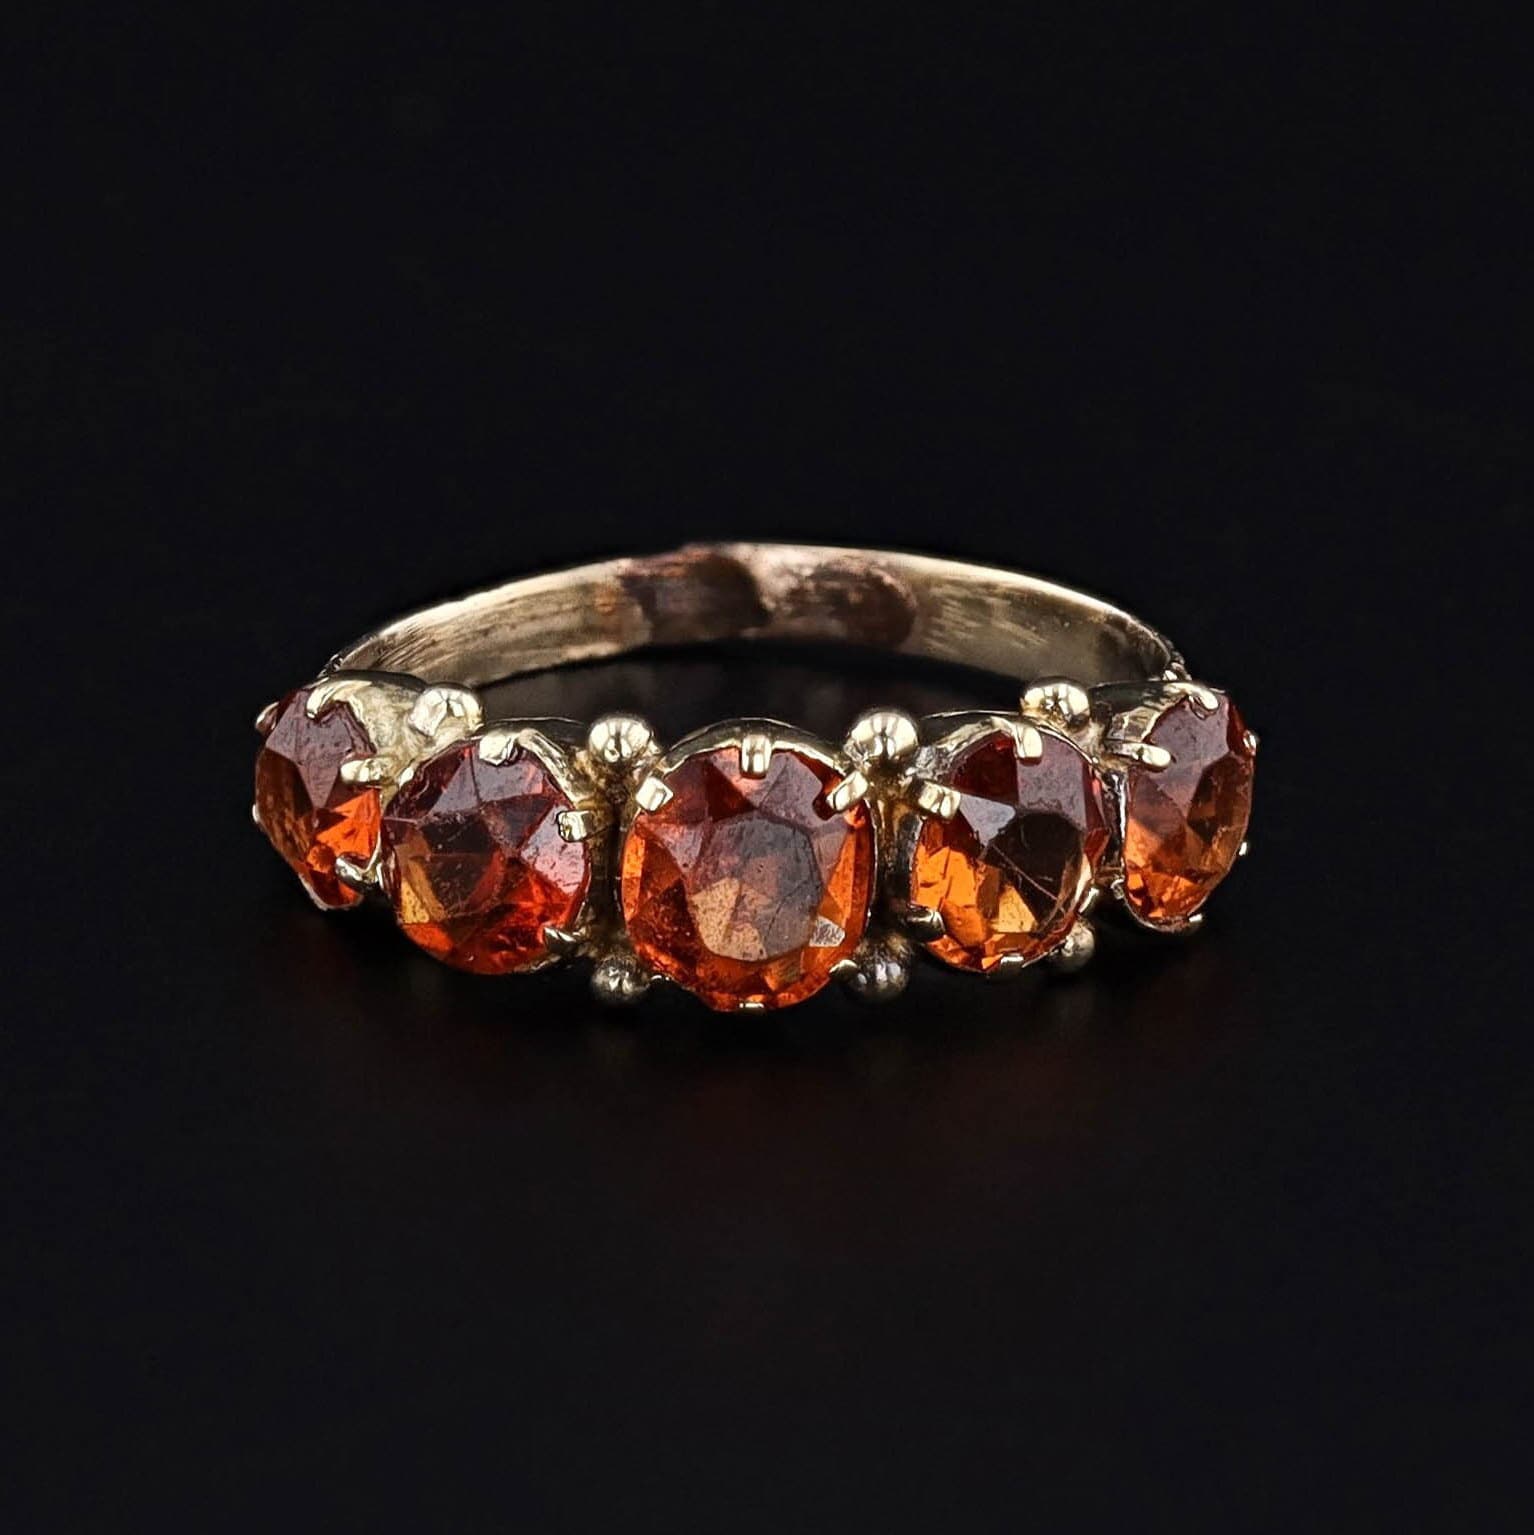 Antique Hessonite Garnet Ring of 18k Gold